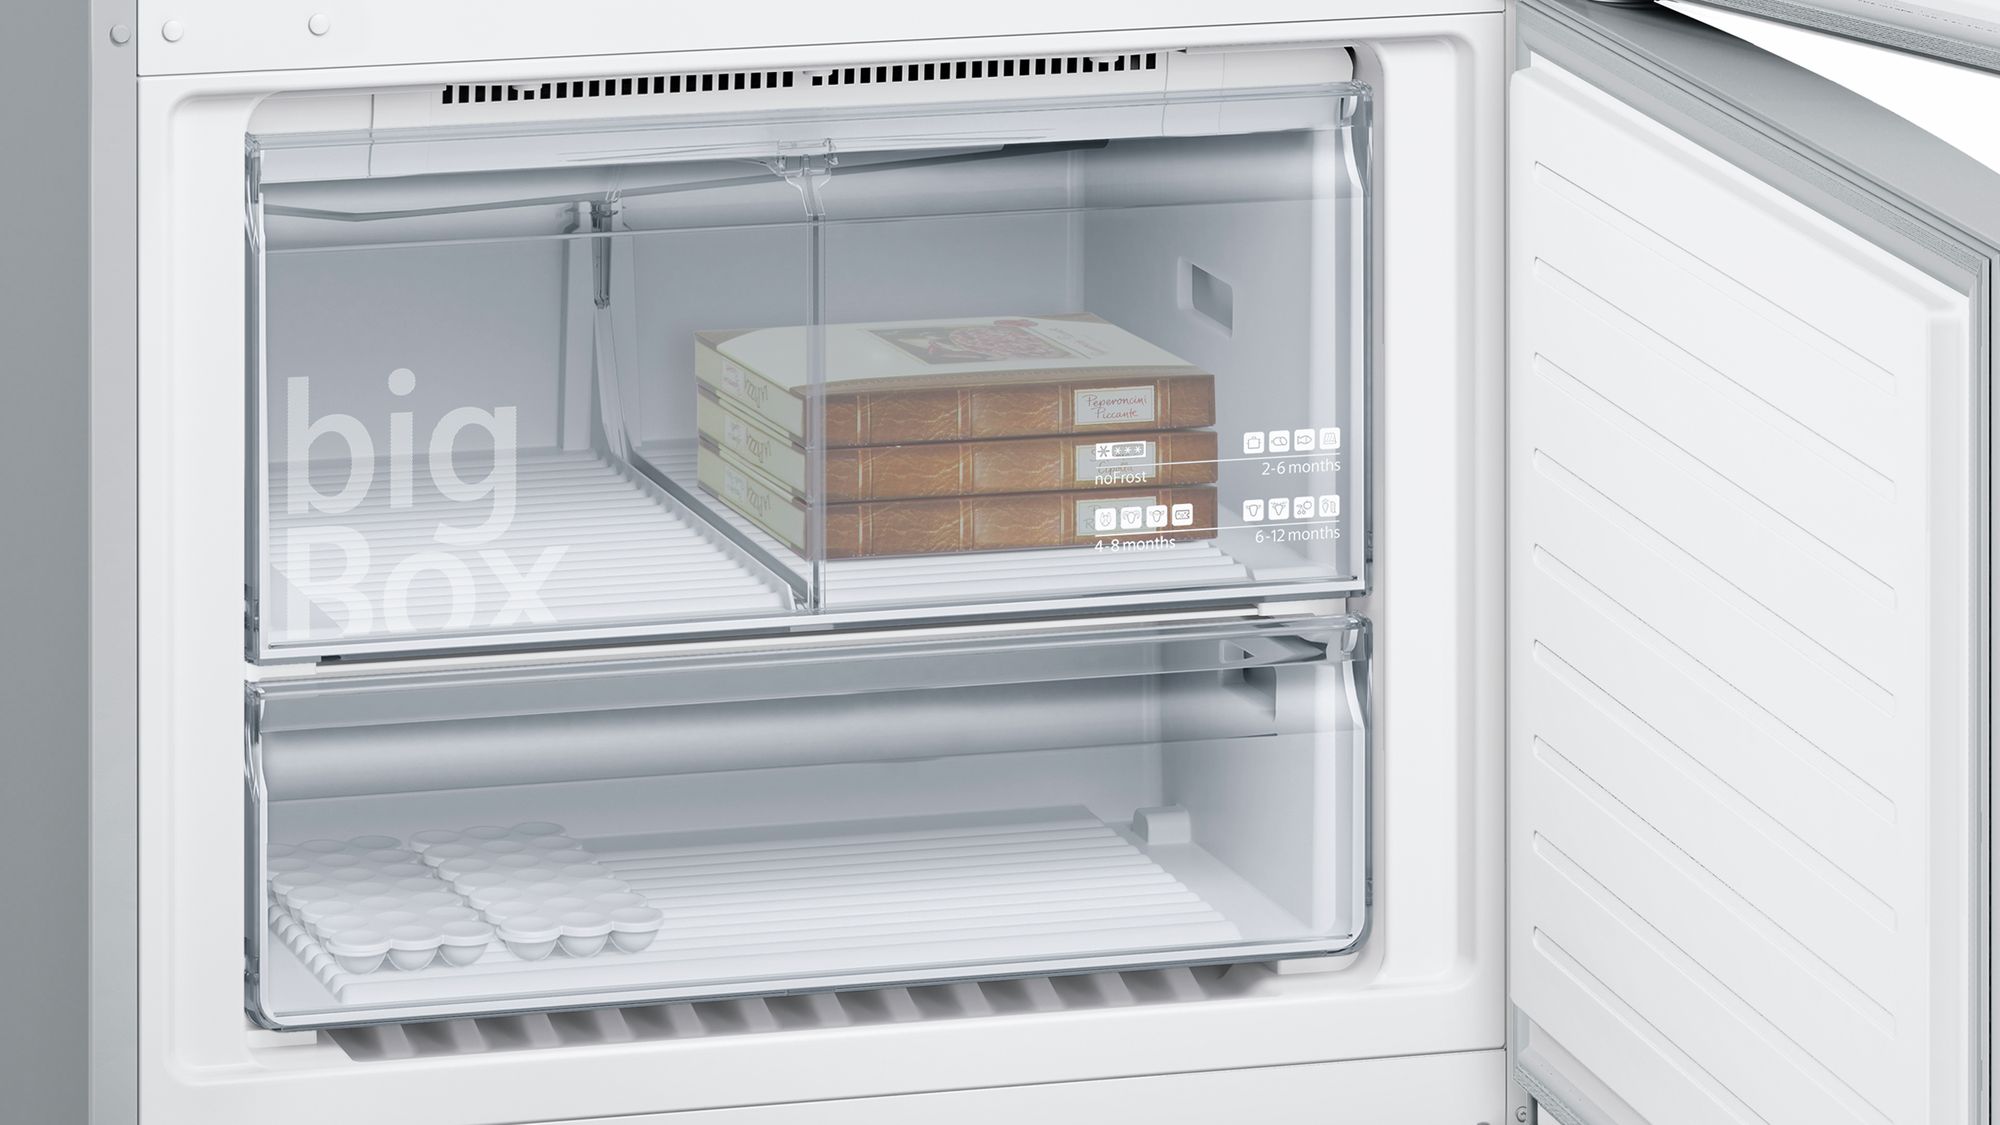 iQ500 Alttan Donduruculu Buzdolabı 86 cm, Kolay temizlenebilir Inox